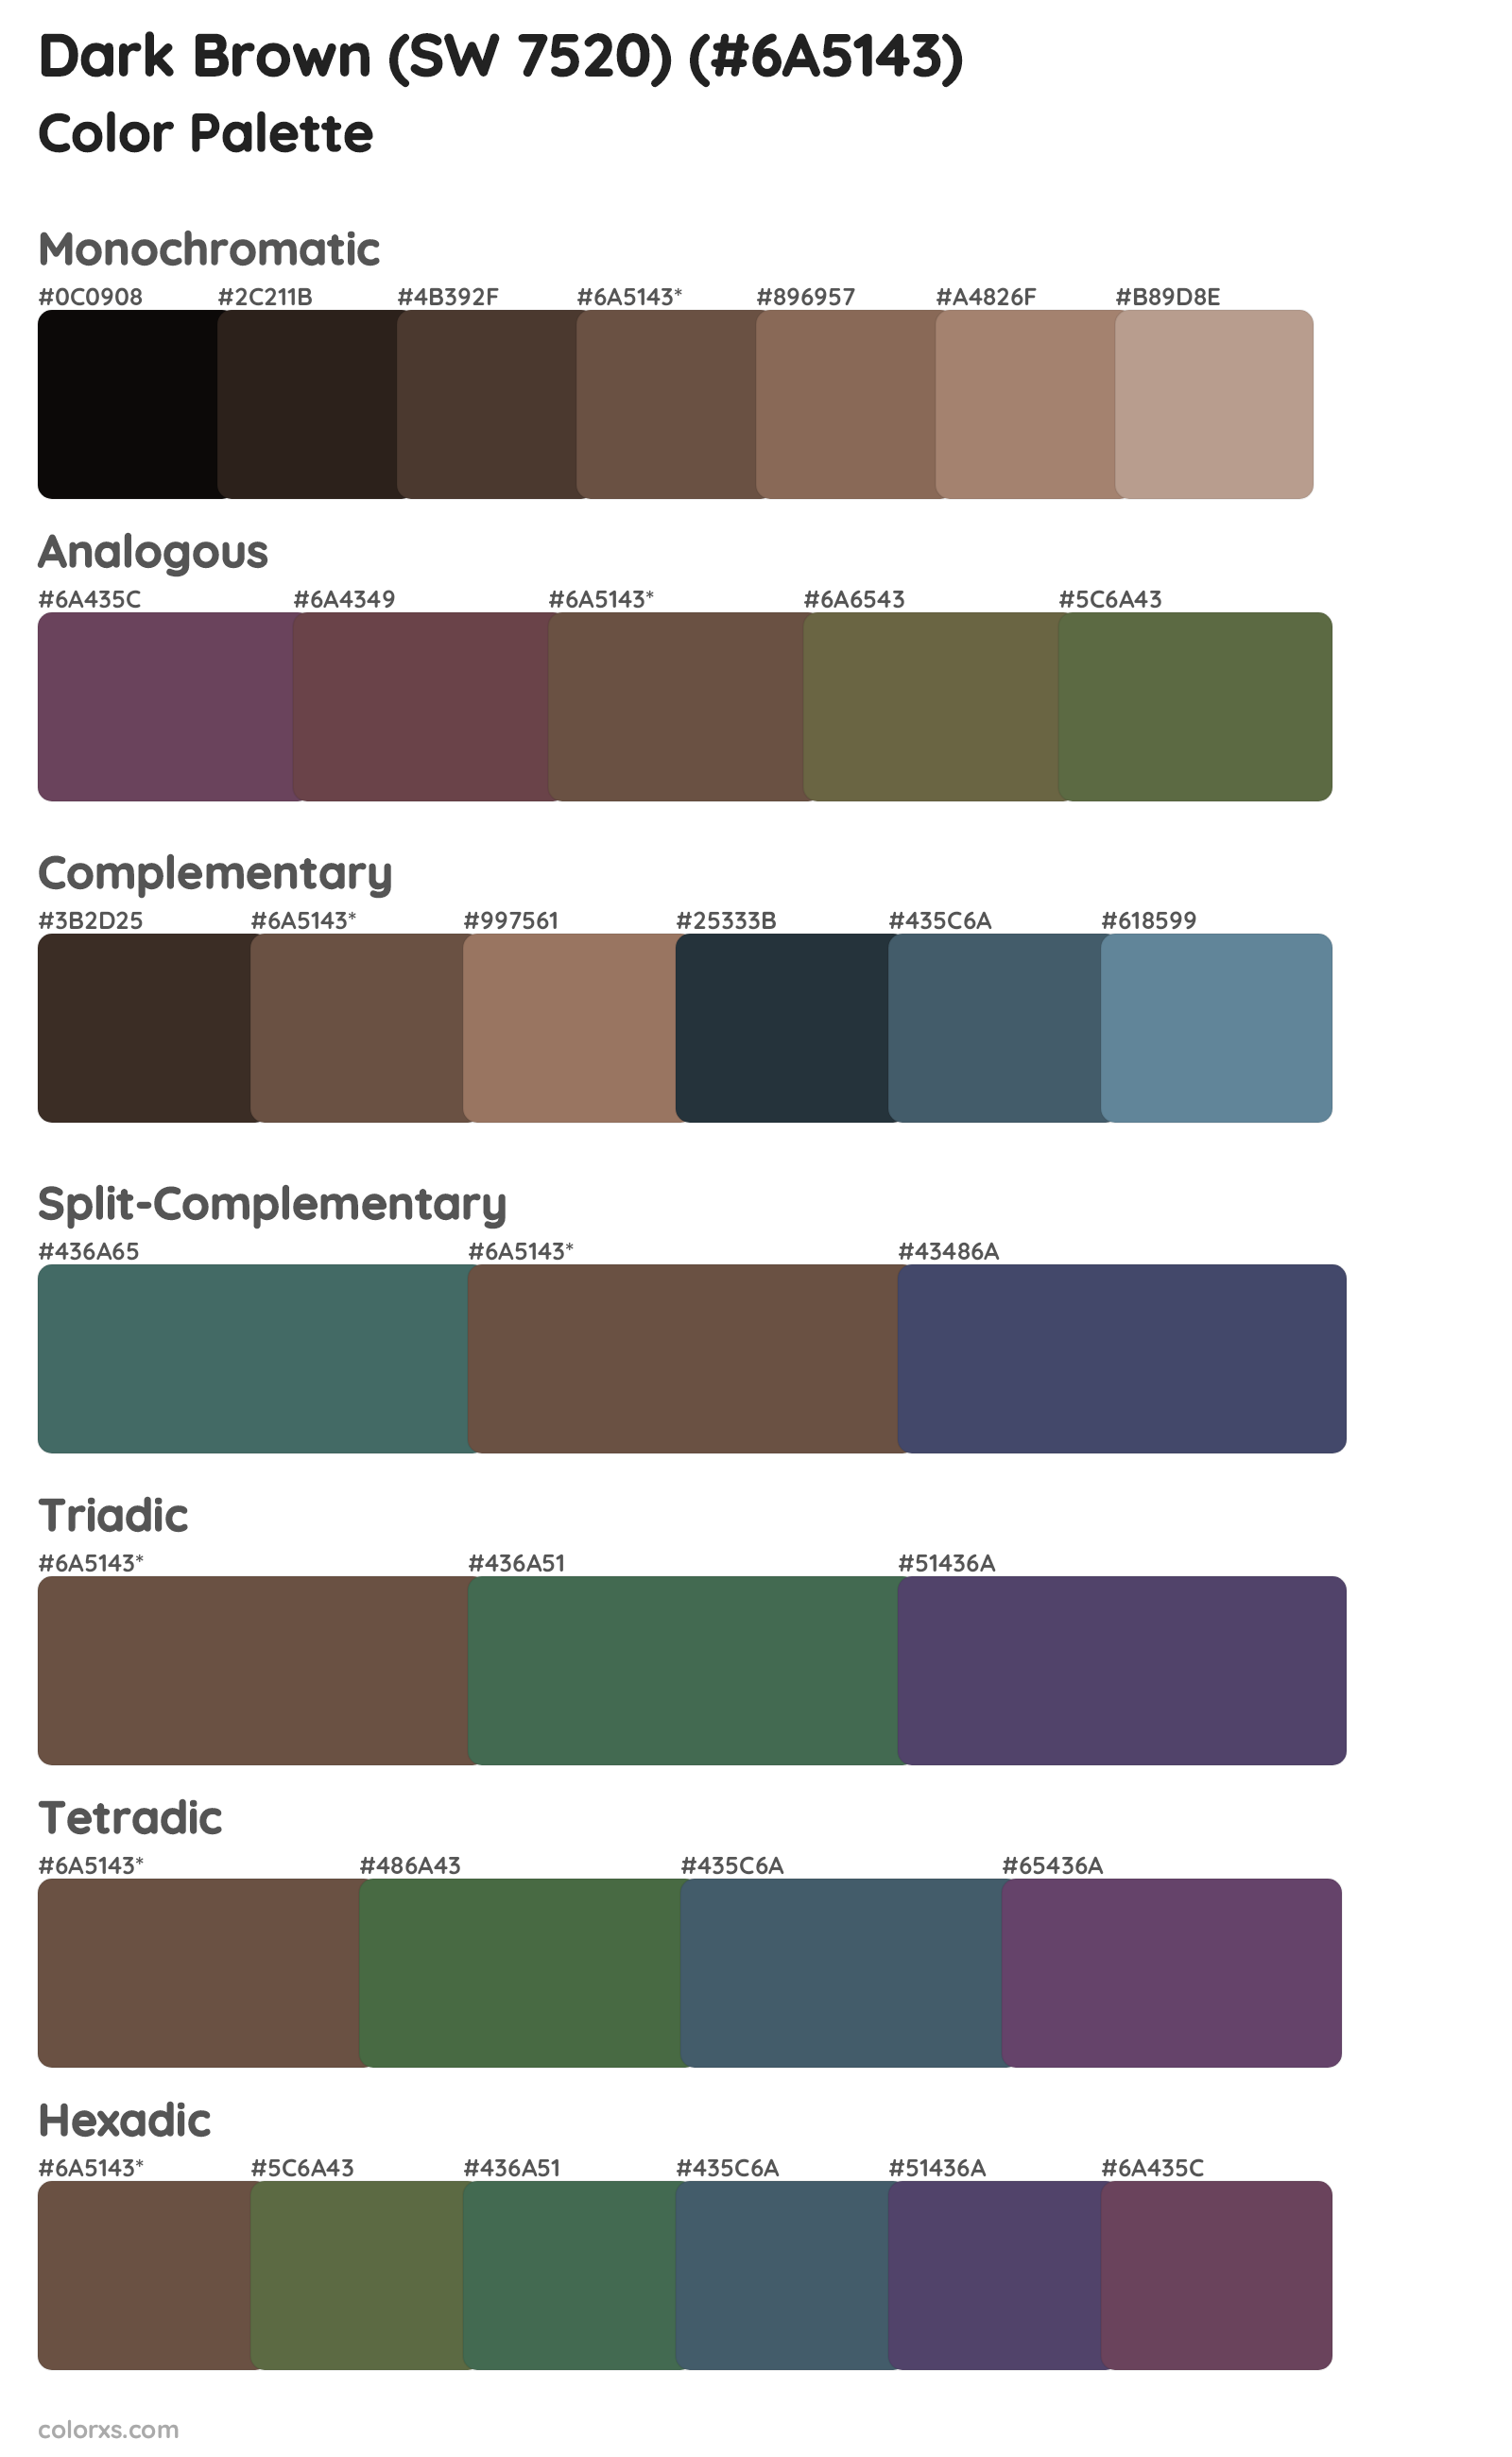 Dark Brown (SW 7520) Color Scheme Palettes